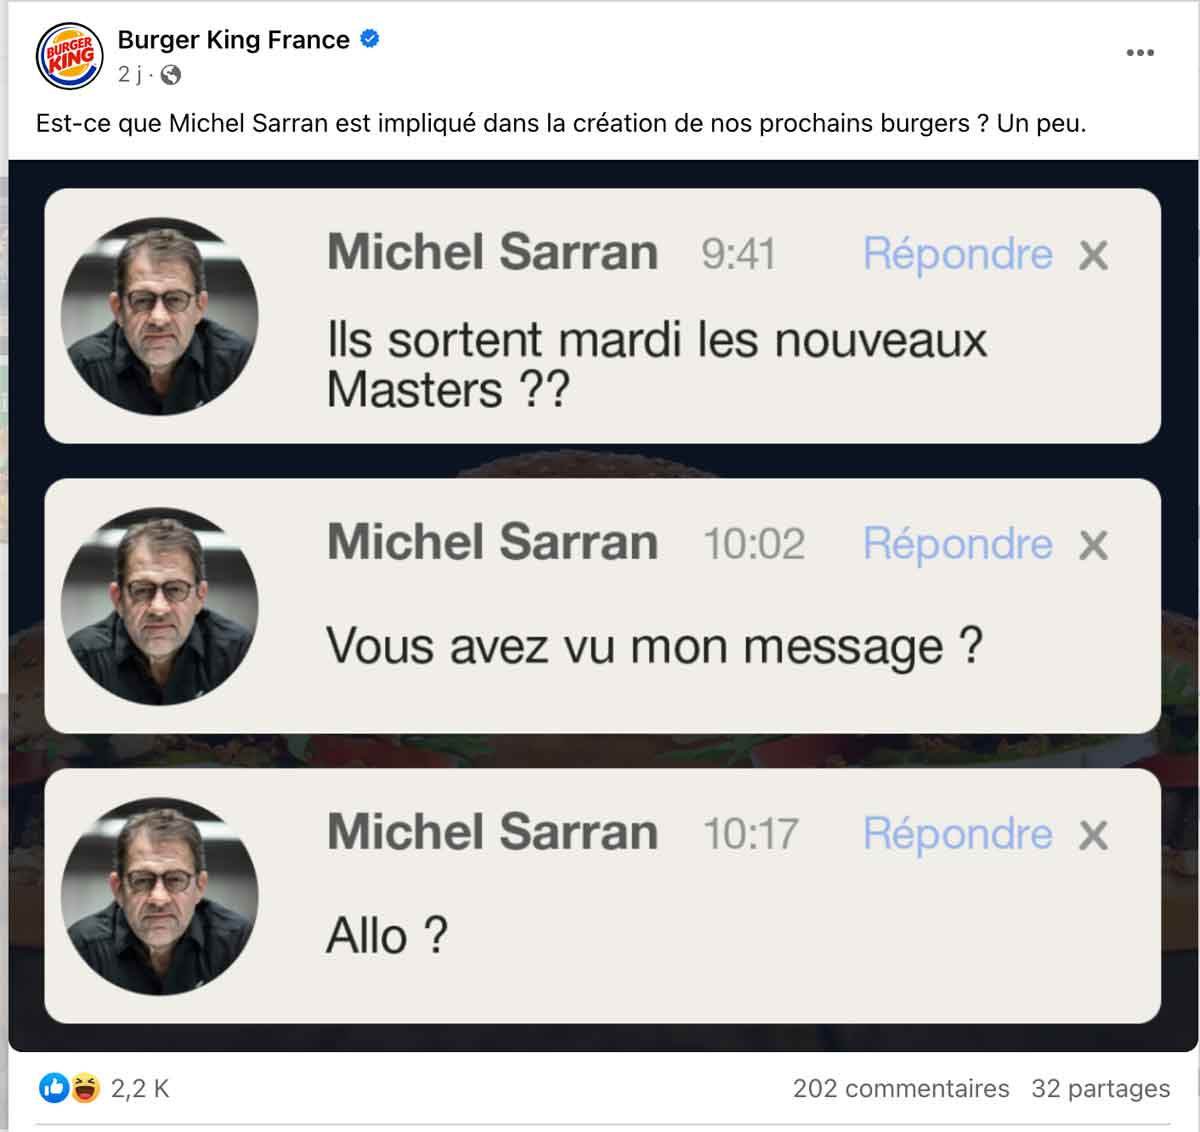 Michel Sarran